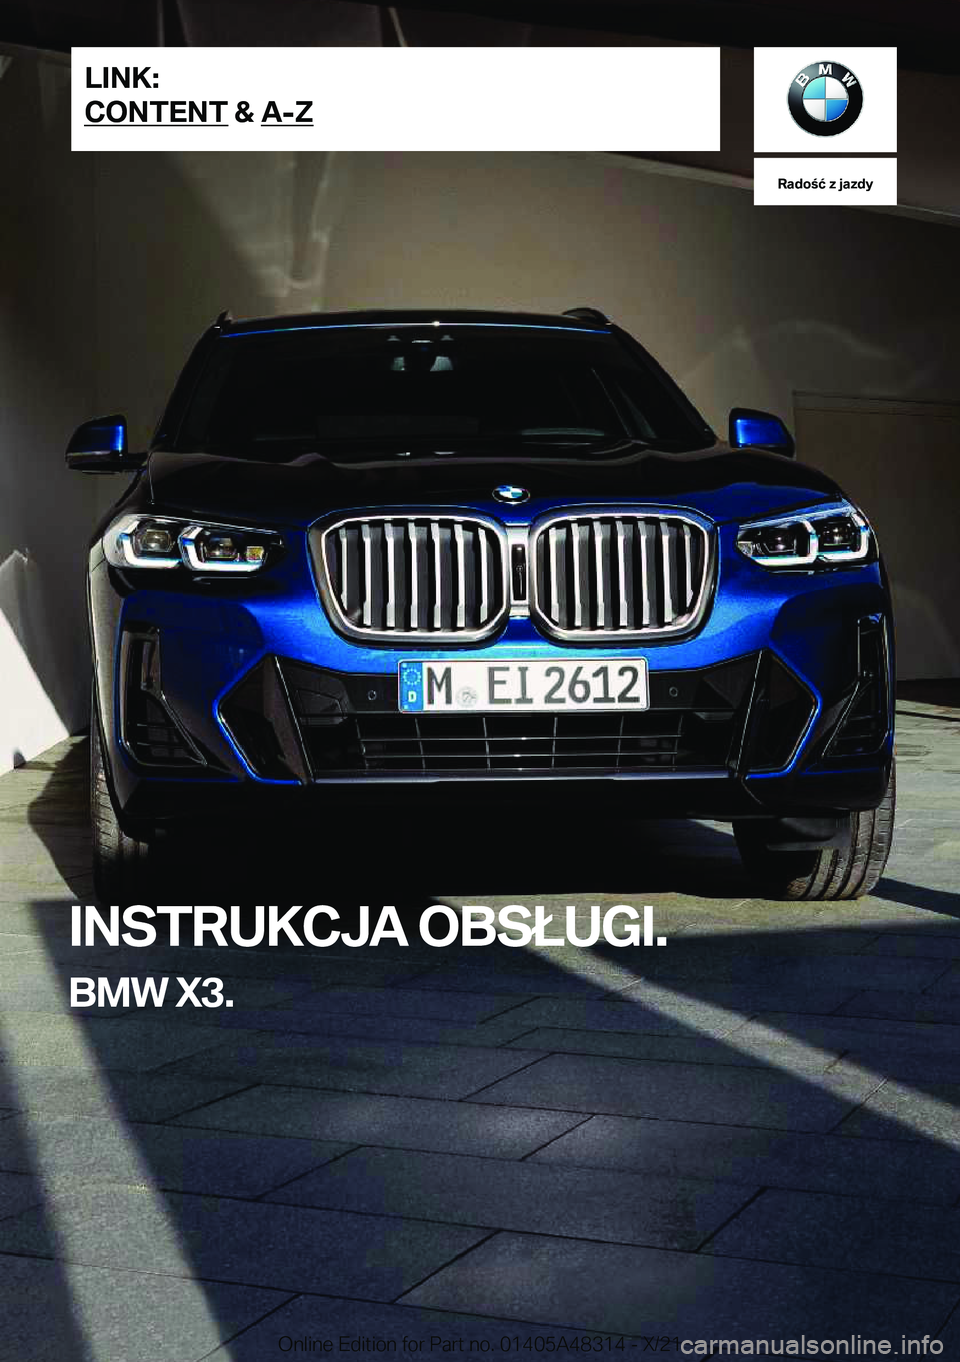 BMW X3 2022  Instrukcja obsługi (in Polish) �R�a�d�o�ć��z��j�a�z�d�y
�I�N�S�T�R�U�K�C�J�A��O�B�S�Ł�U�G�I�.
�B�M�W��X�3�.�L�I�N�K�:
�C�O�N�T�E�N�T��&��A�-�Z�O�n�l�i�n�e��E�d�i�t�i�o�n��f�o�r��P�a�r�t��n�o�.��0�1�4�0�5�A�4�8�3�1�4�